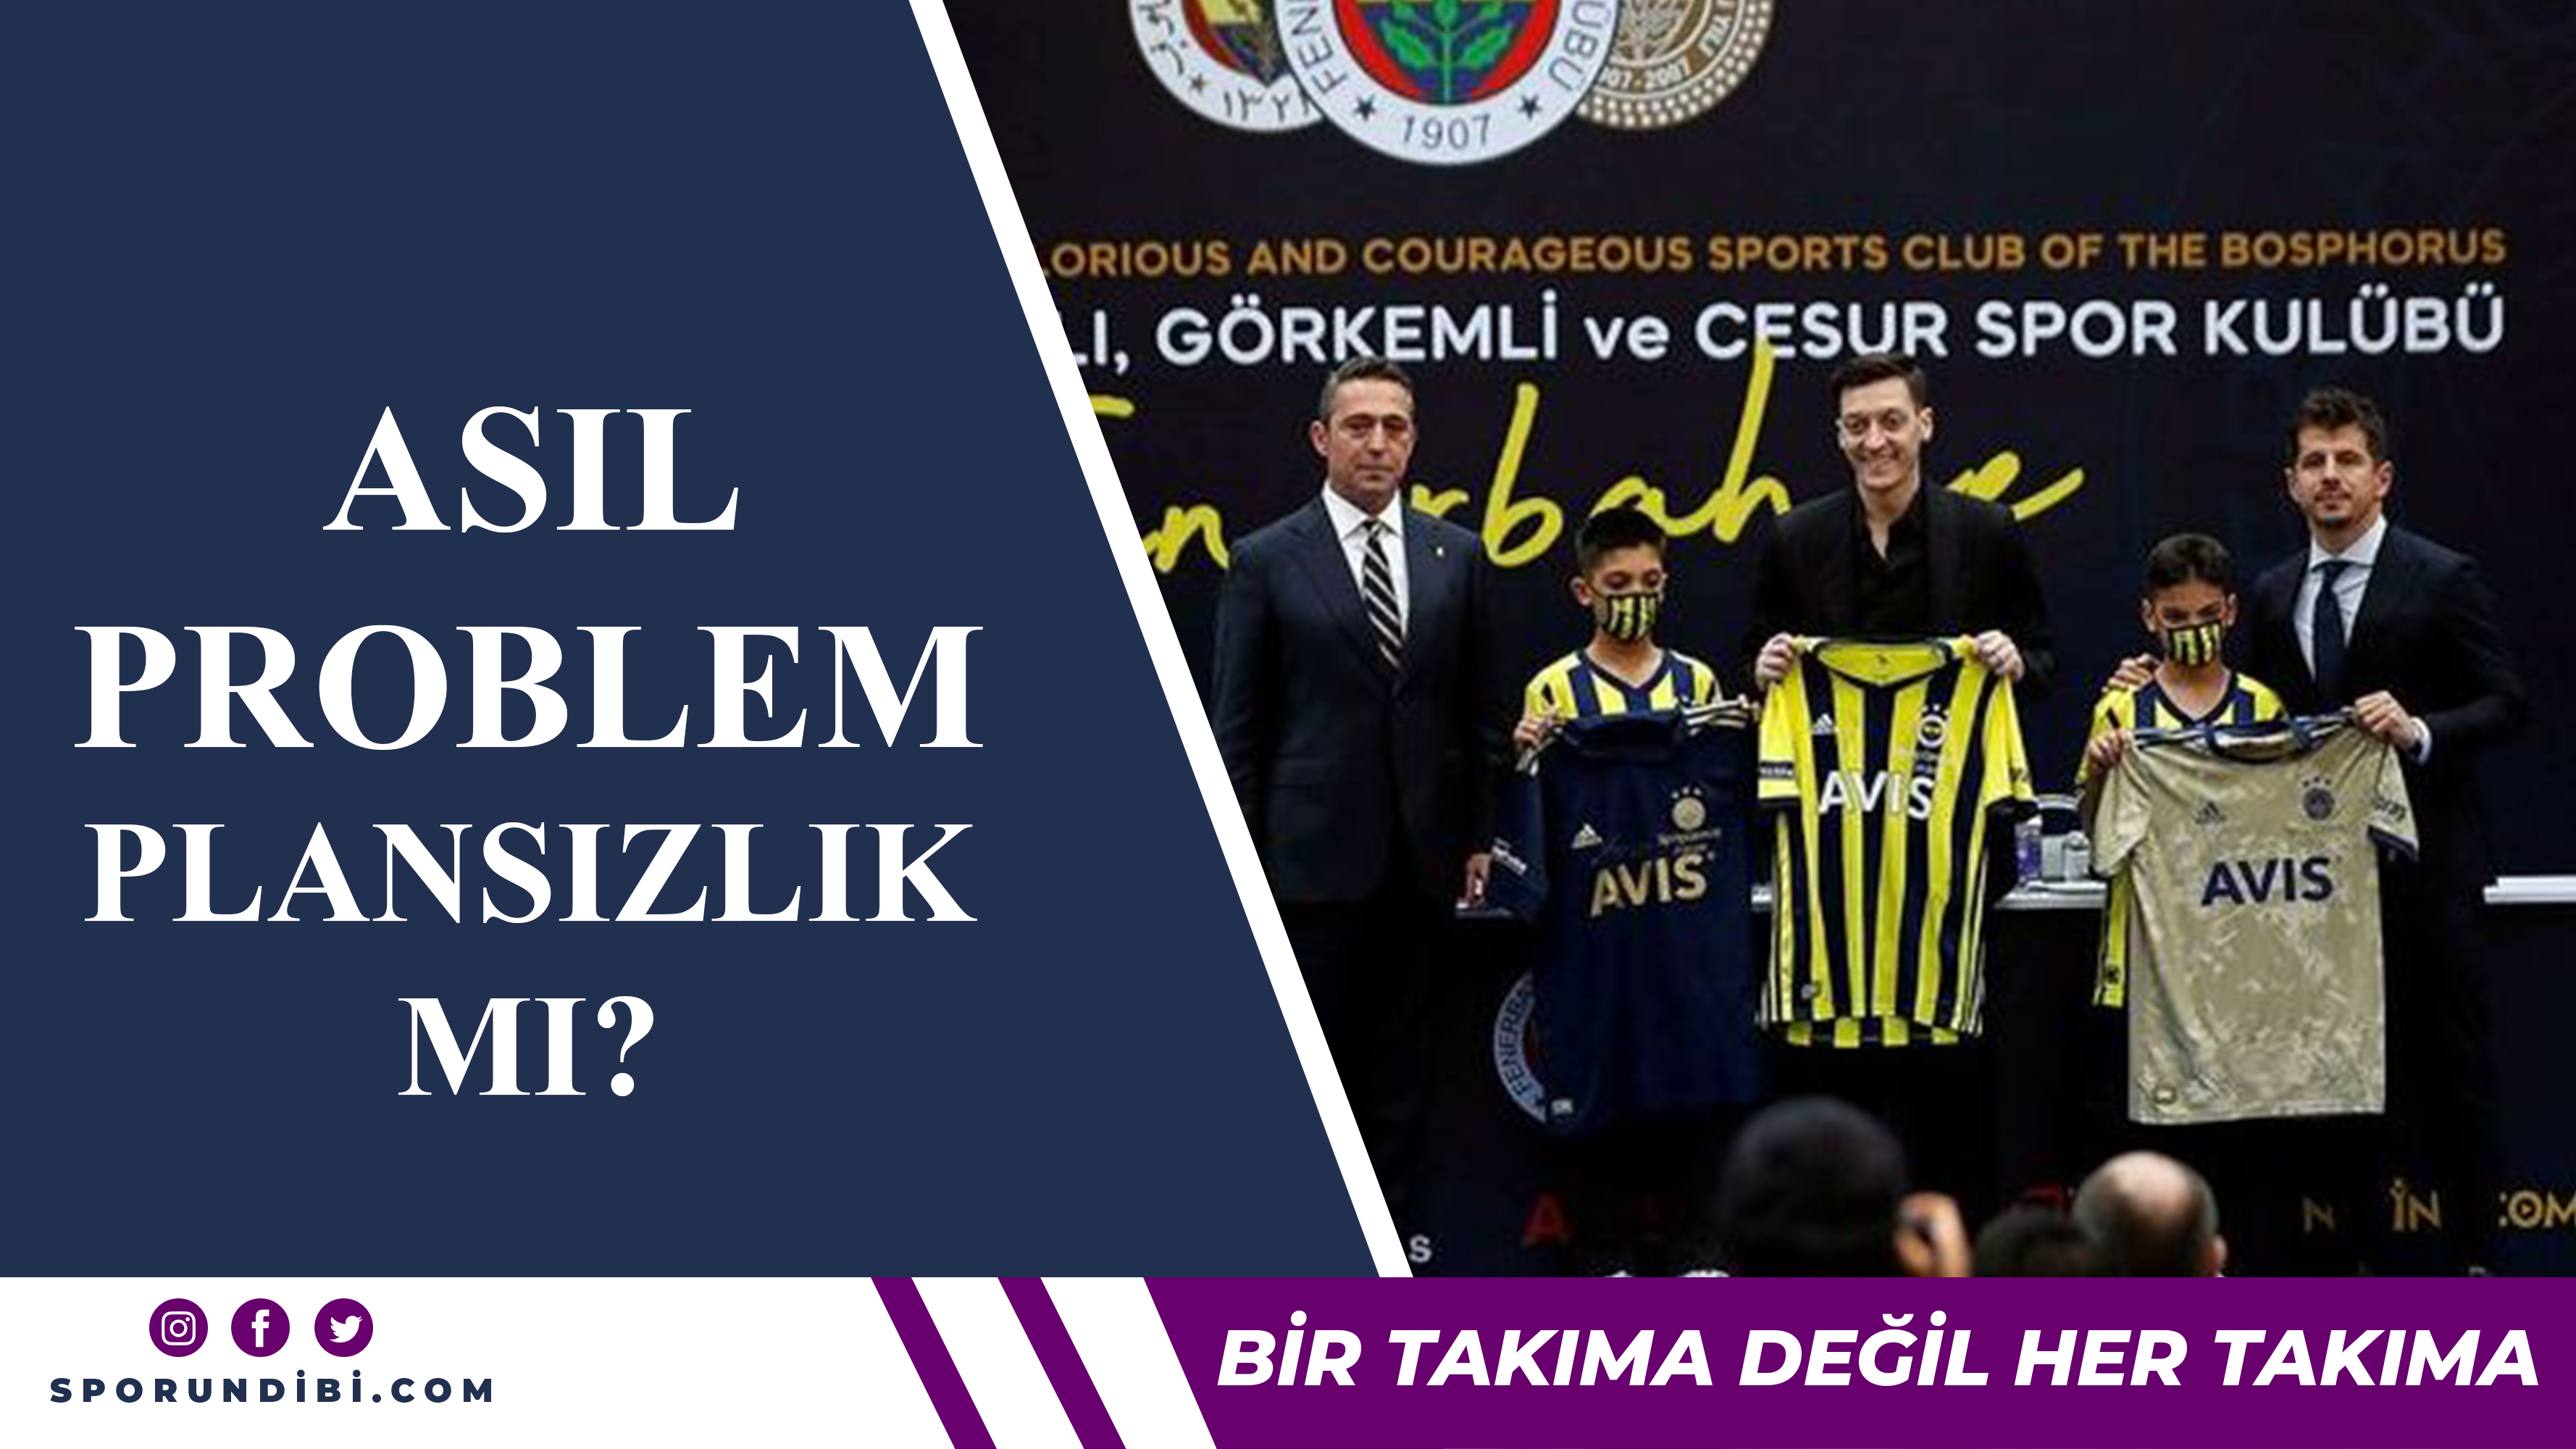 Fenerbahçe'de asıl problem plansızlık mı?